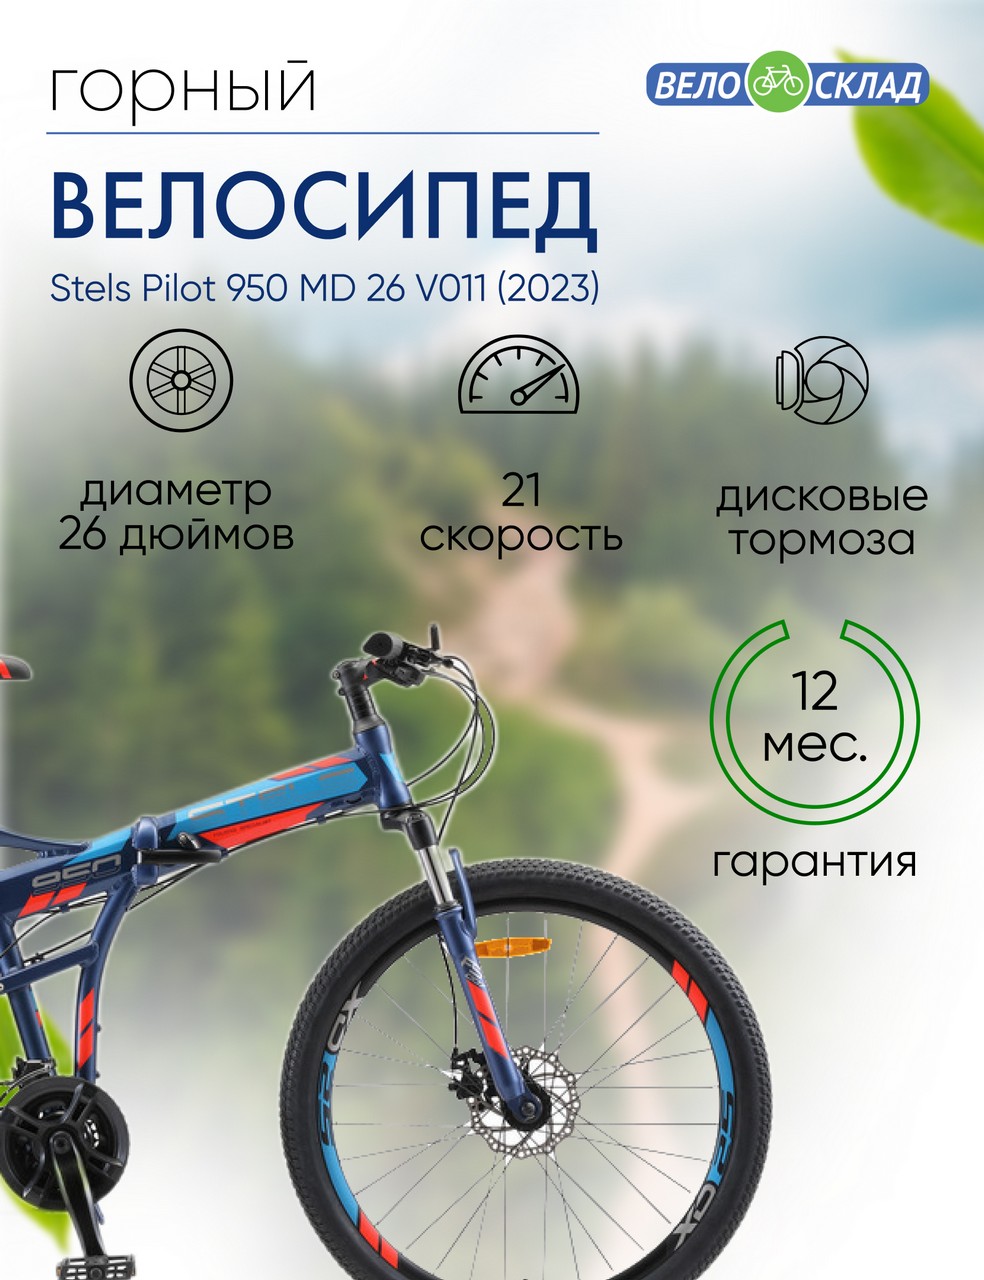 Складной велосипед Stels Pilot 950 MD 26 V011, год 2023, цвет Синий, ростовка 19